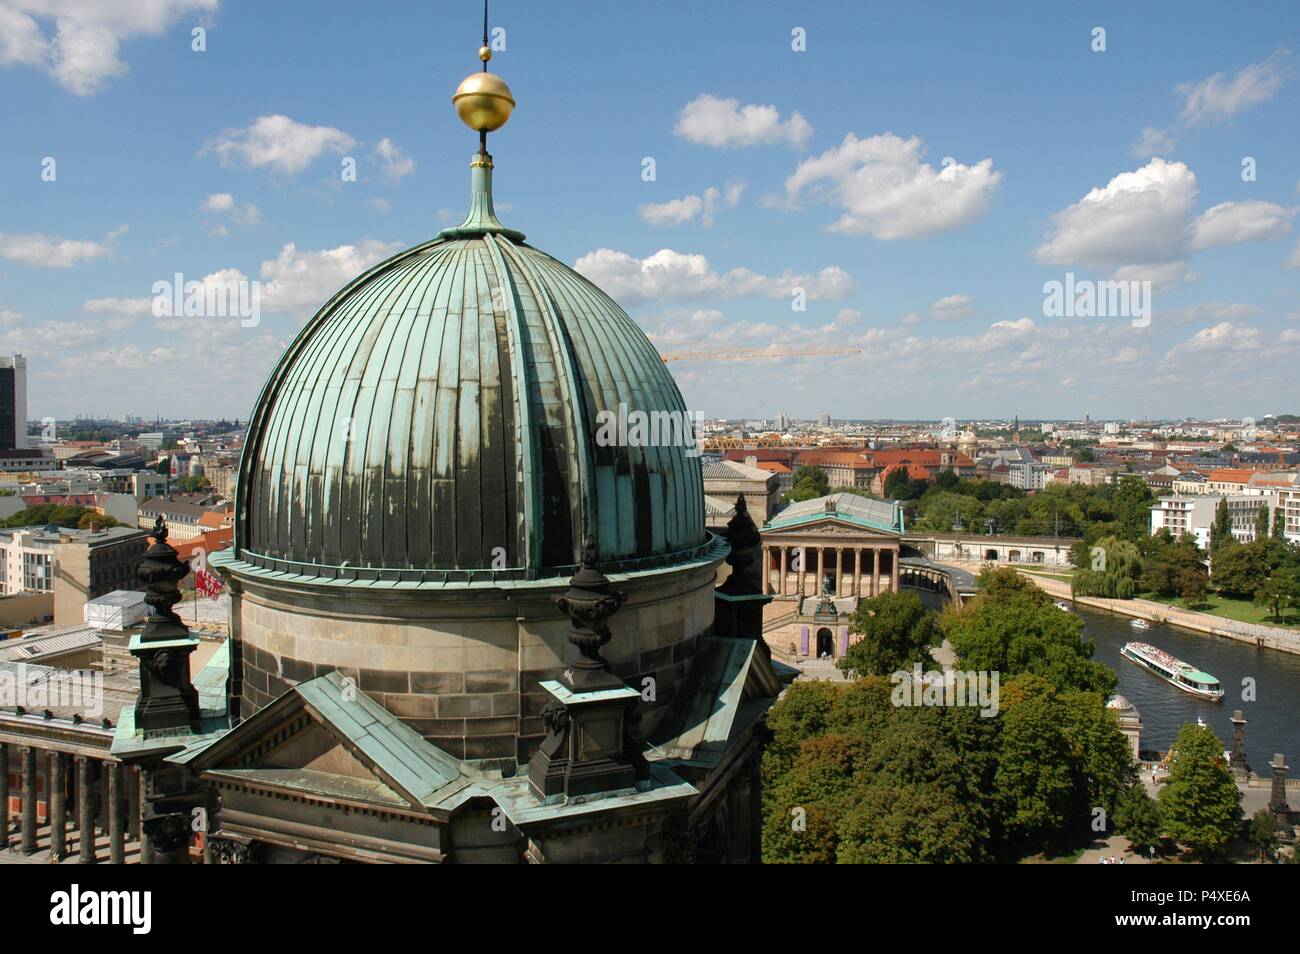 ALEMANIA. BERLIN. Panorámica de la ciudad. En primer término, una de las cúpulas de la Catedral (Berliner Dom), erigida a finales del S. XIX por Guillermo II de Prusia y reconstruída tras la II Guerra Mundial. Stock Photo